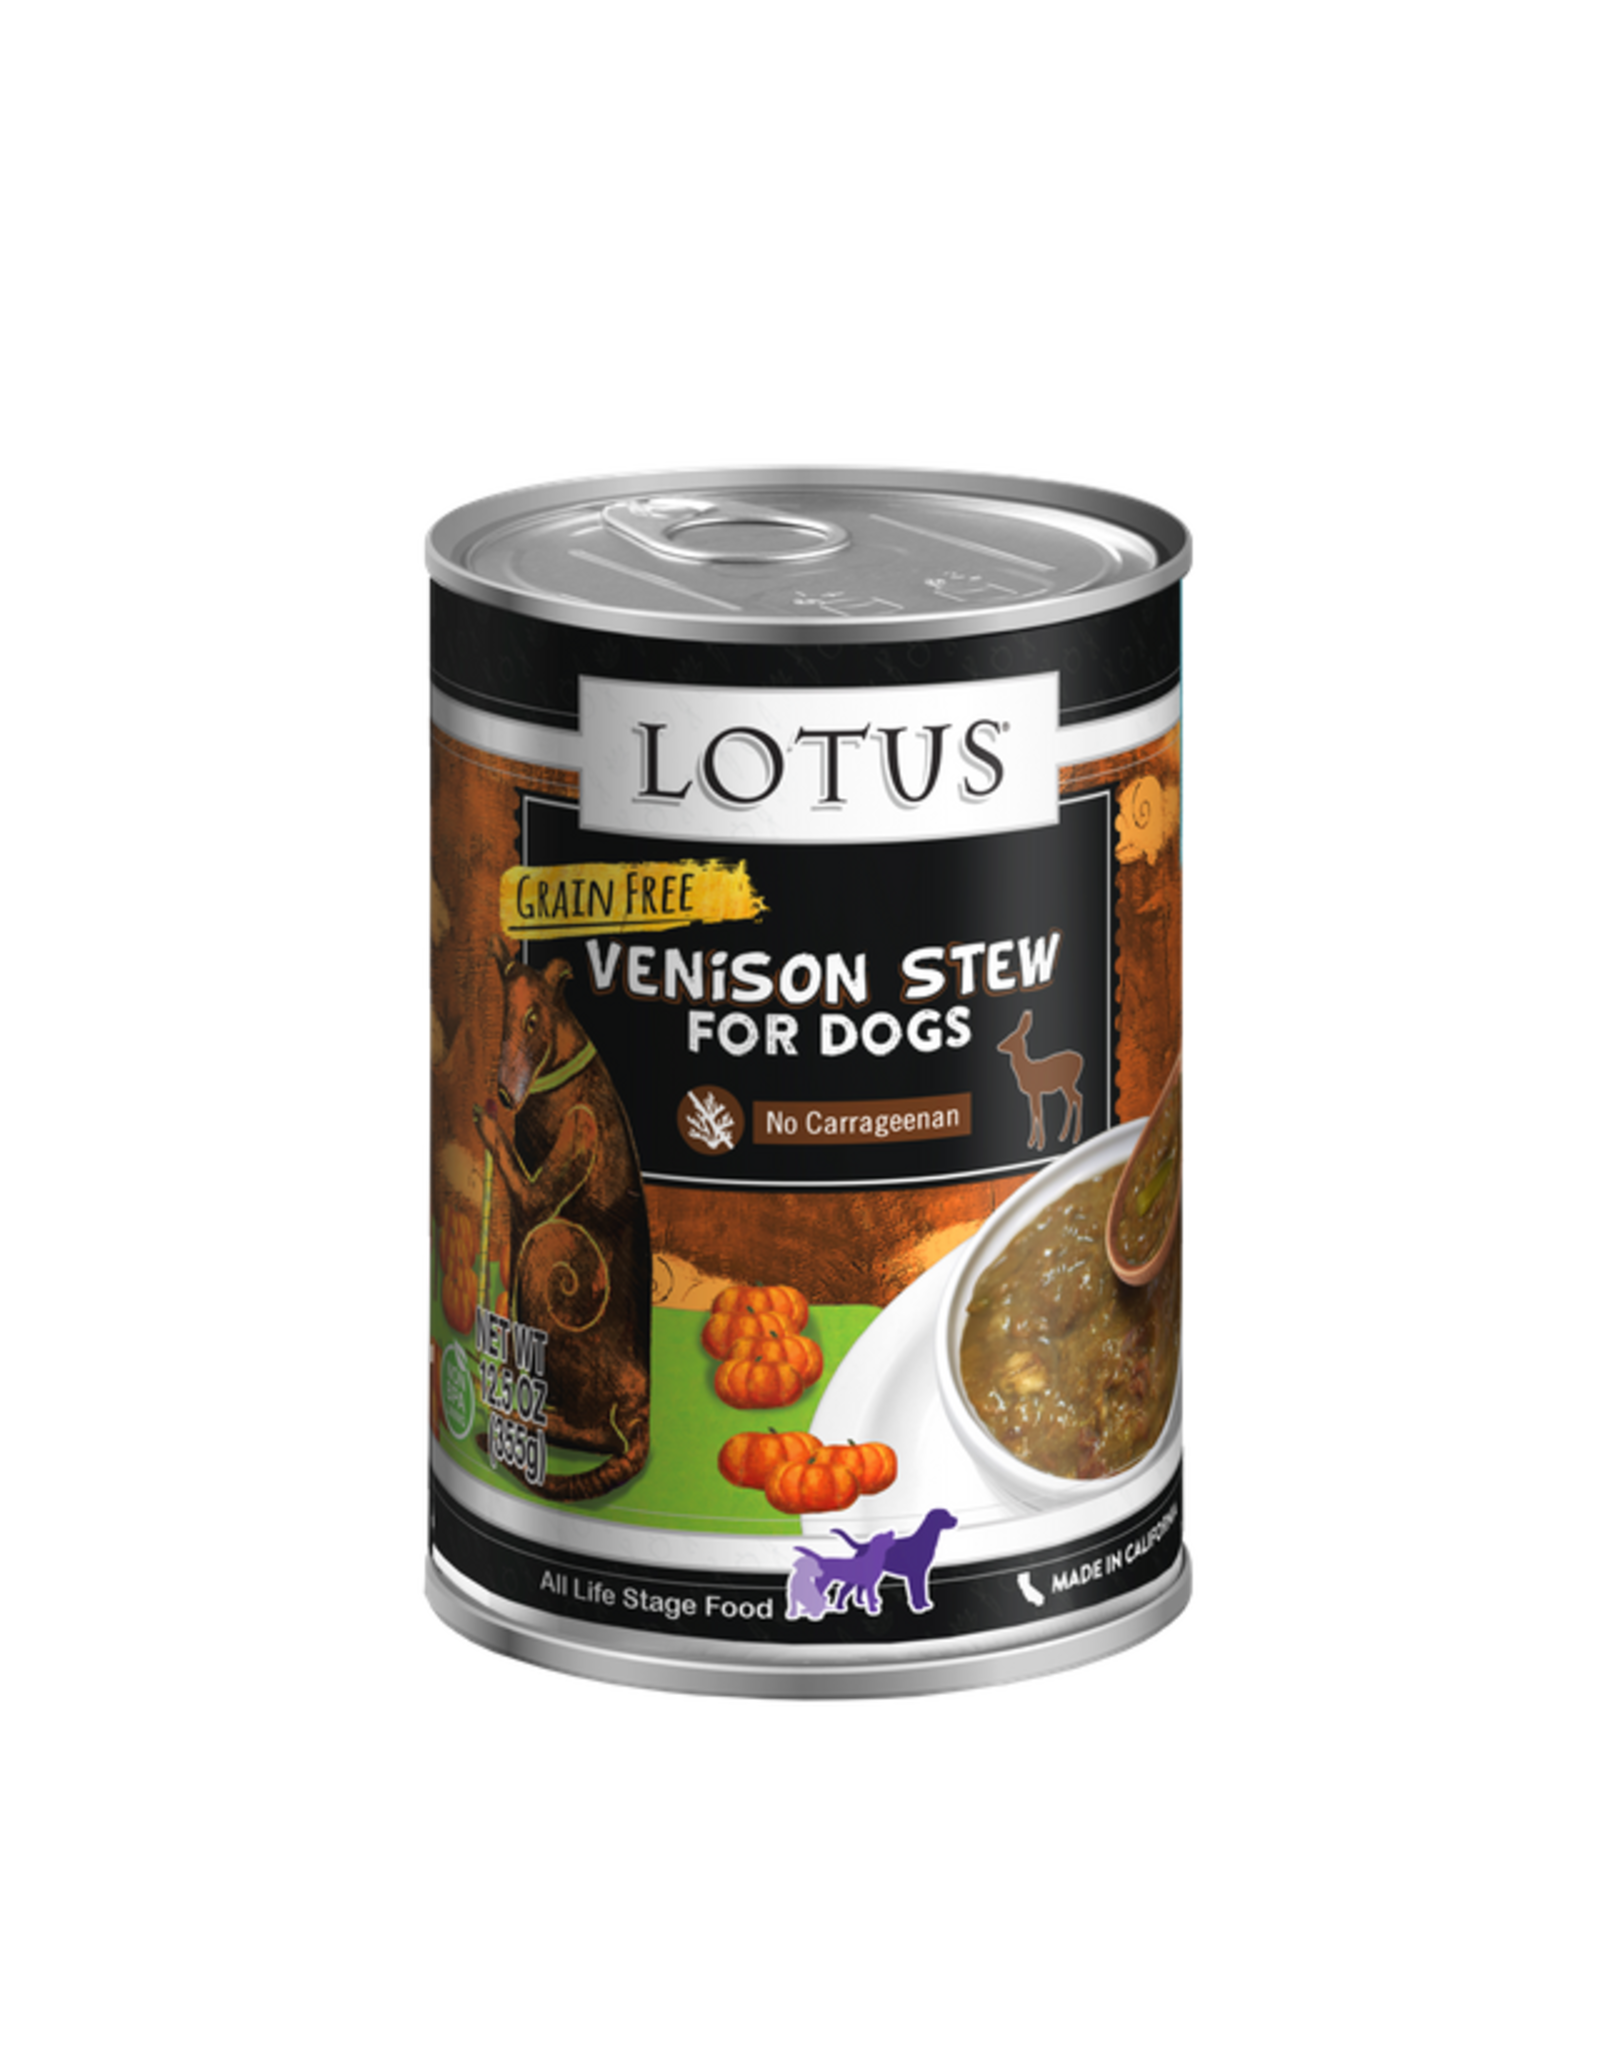 Lotus Pet Food Lotus Dog Venison Stew 12.5oz